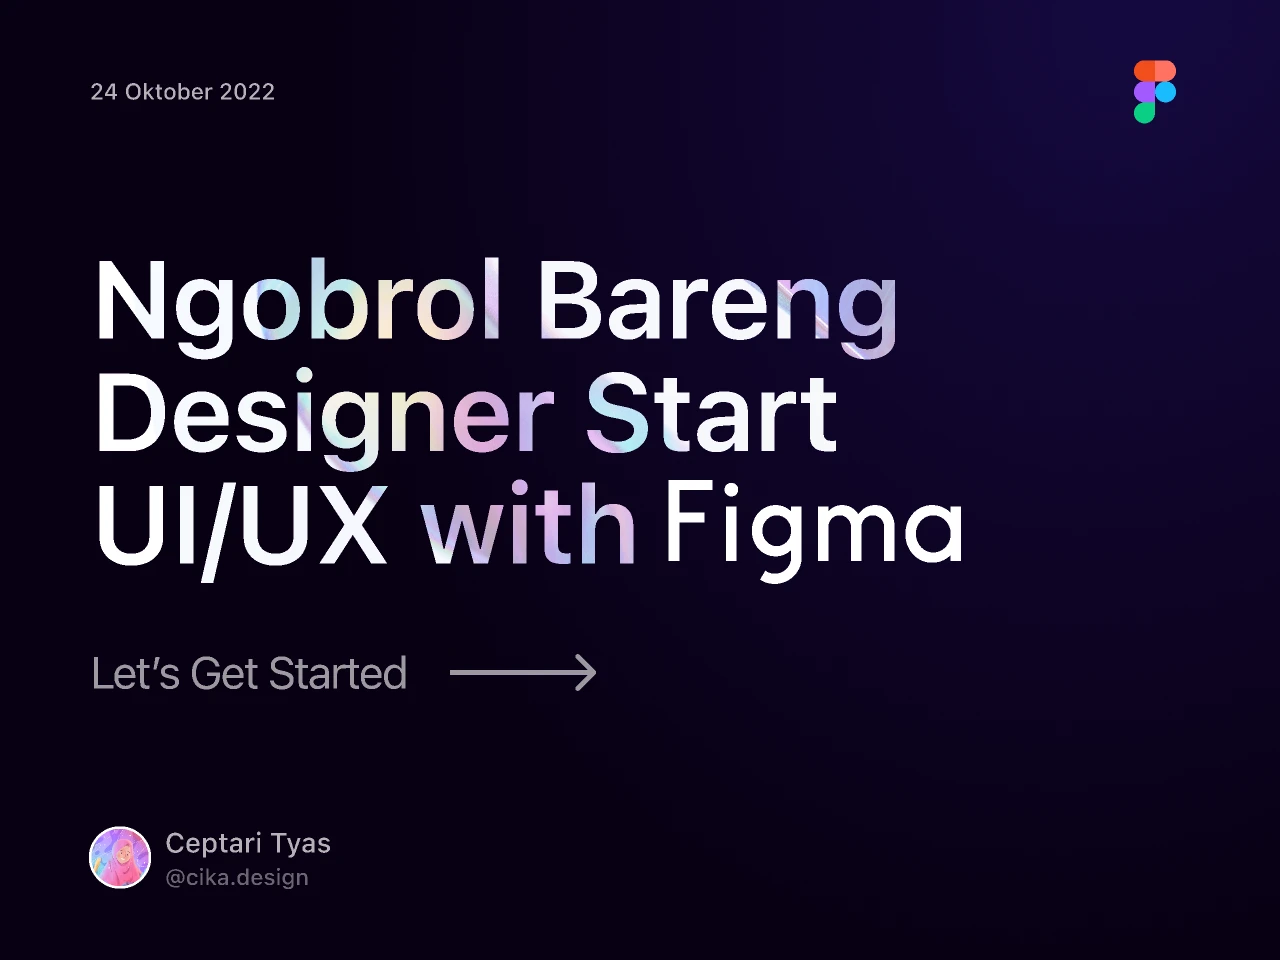 Ngobrol Bareng Designer - Ceptari Tyas for Figma and Adobe XD